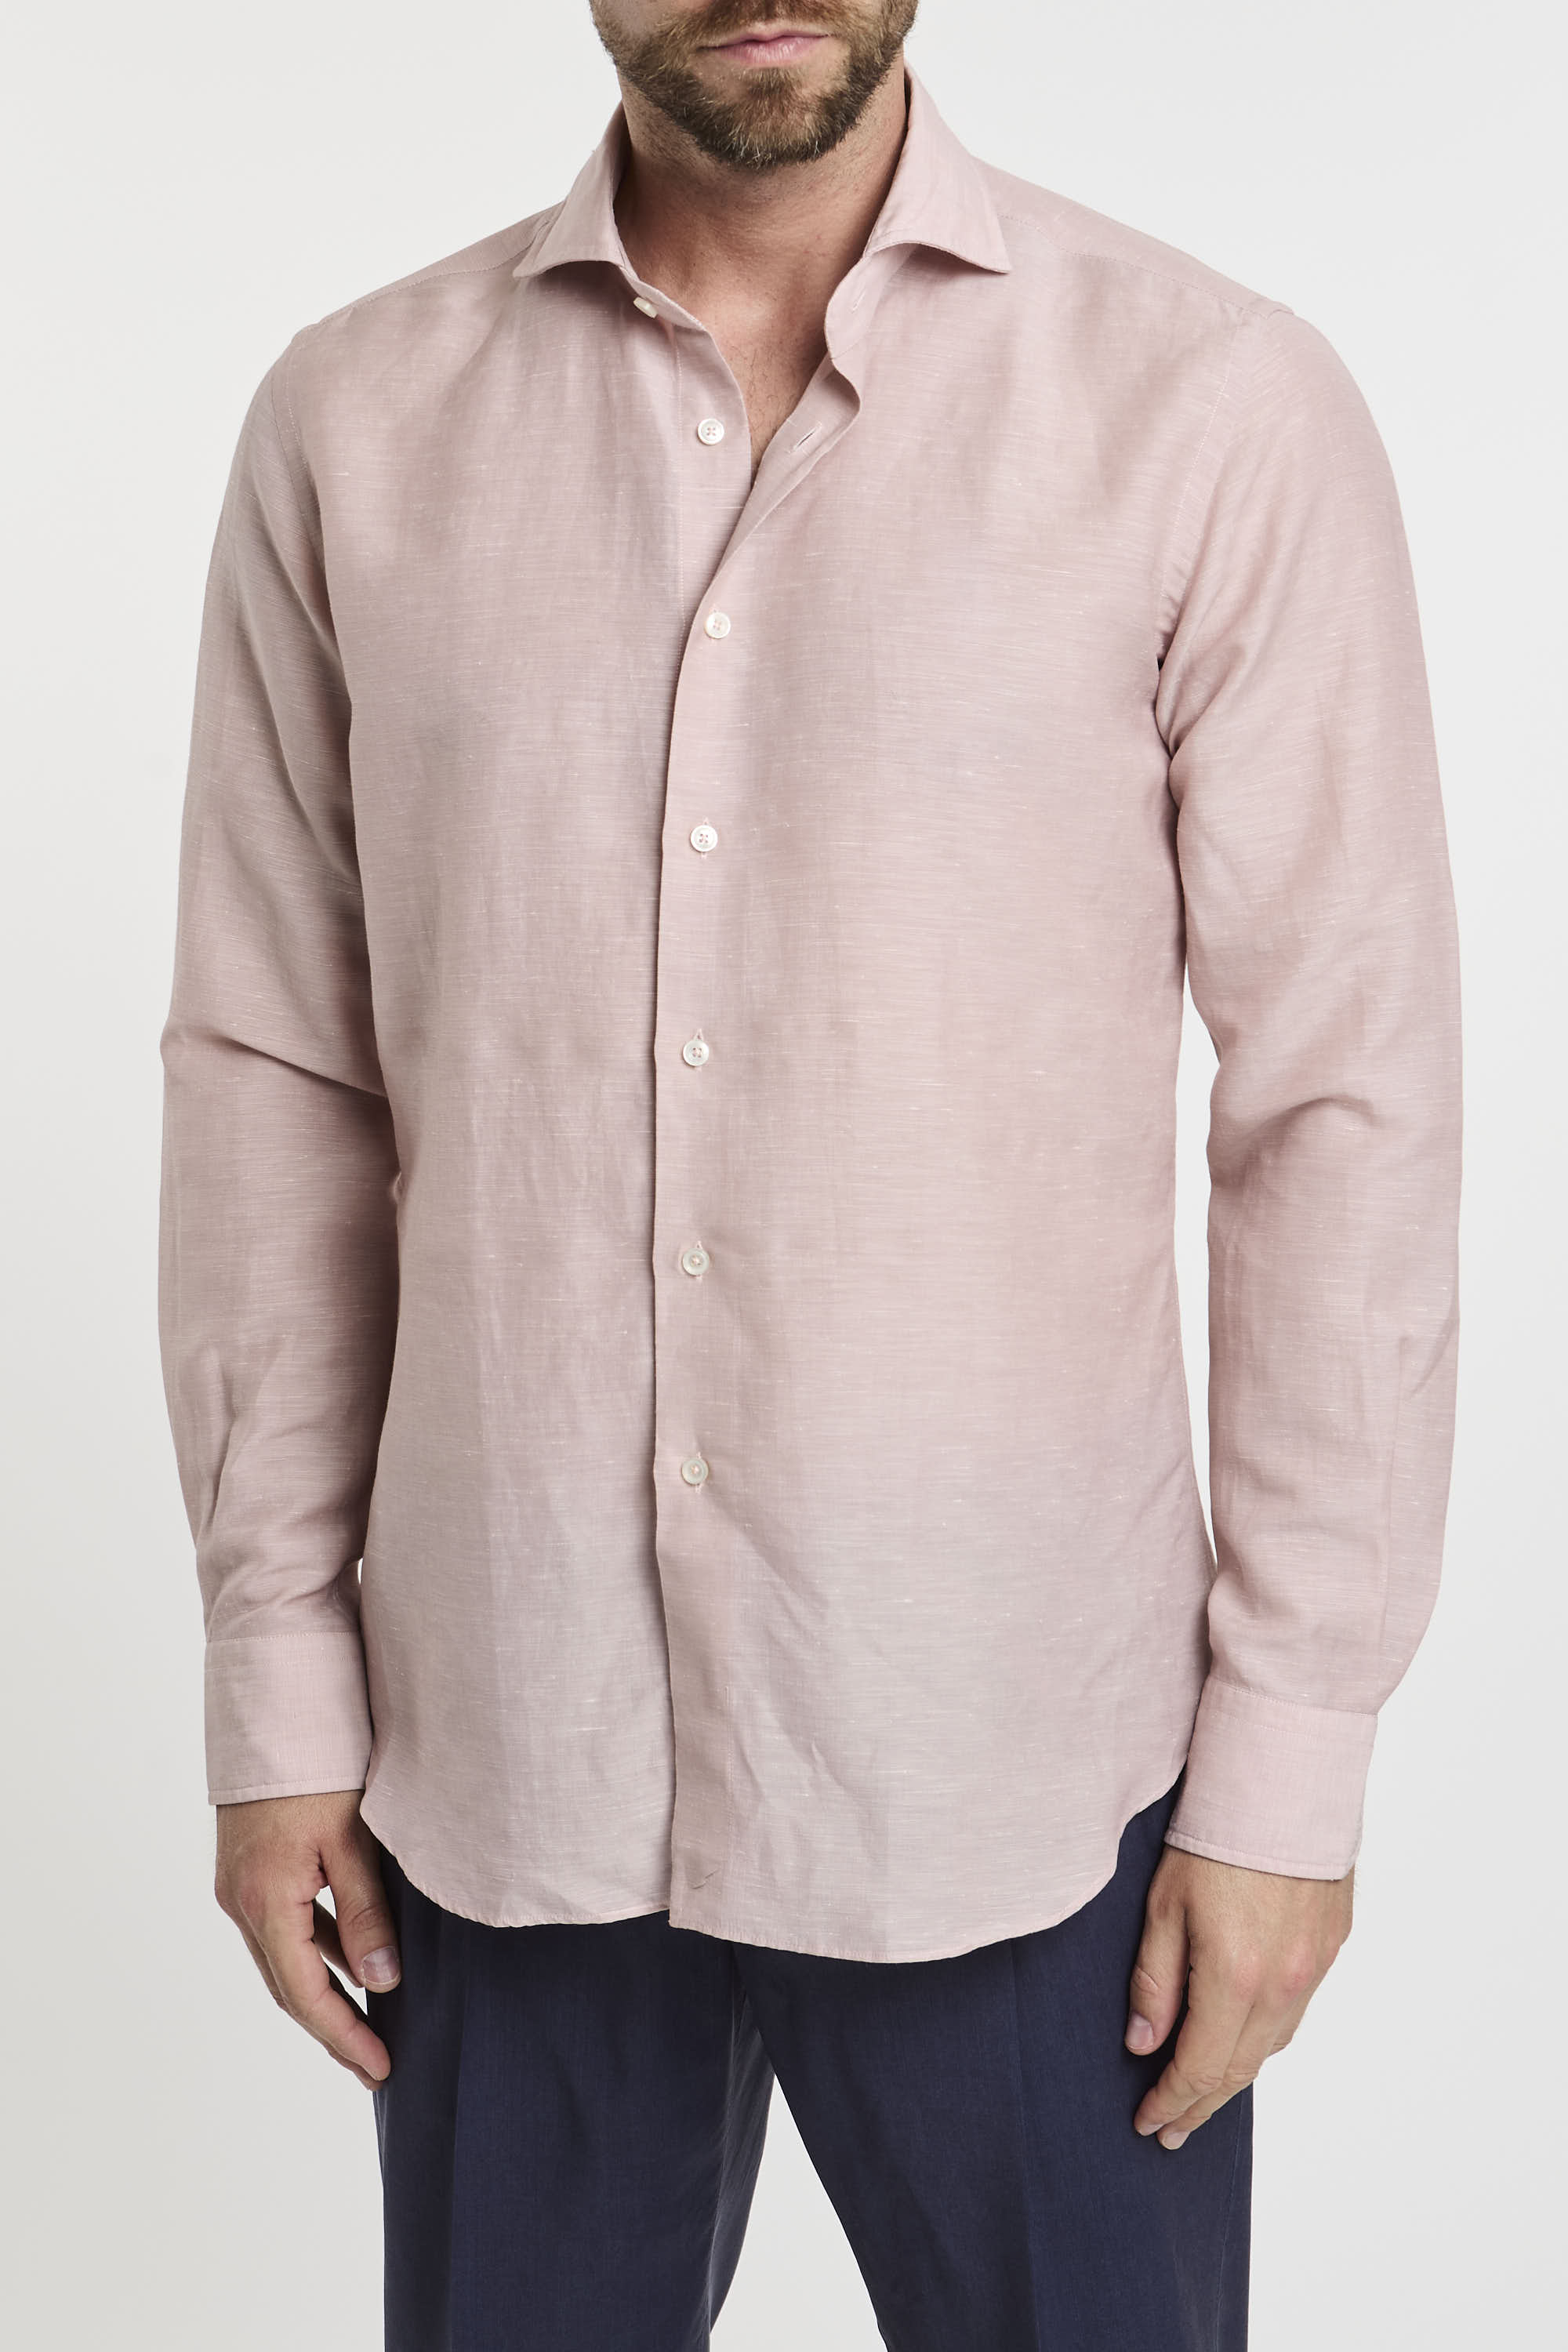 Xacus Wool and Linen Blend Pink Shirt-4